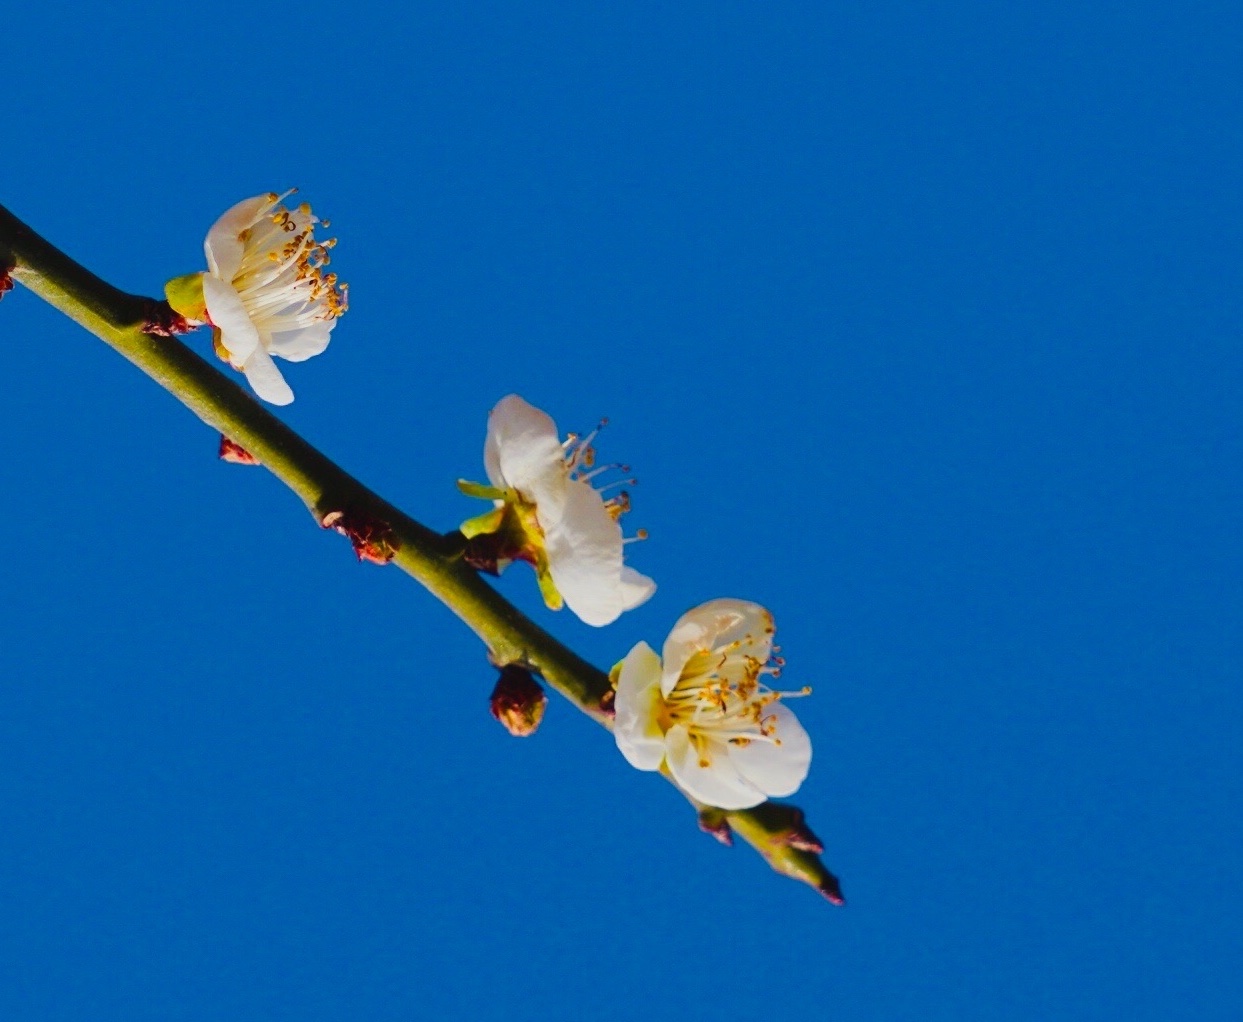 【原创首发】蓝天下盛开的梅花